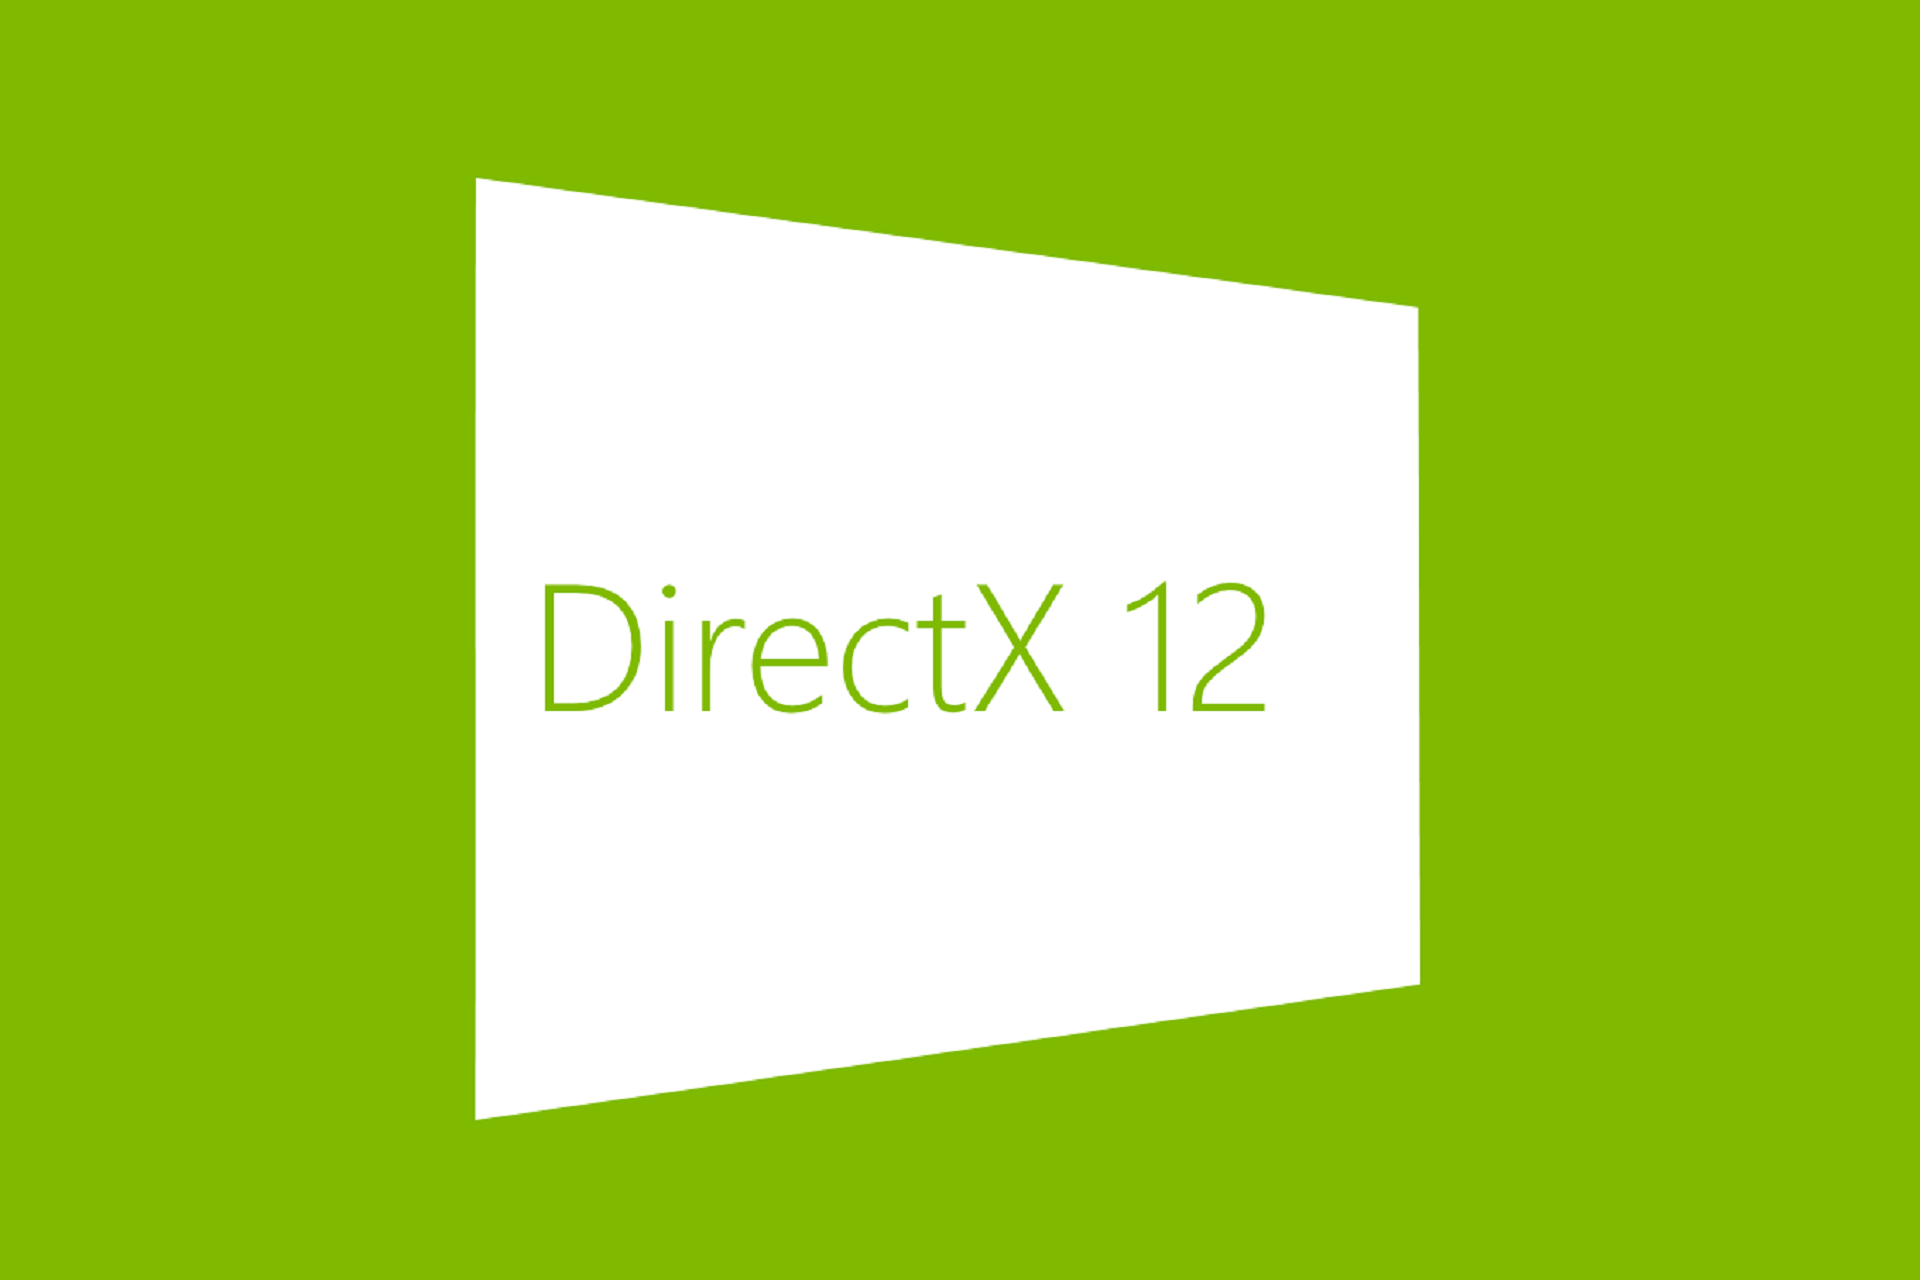 directx 11 windows 10 64 bit download